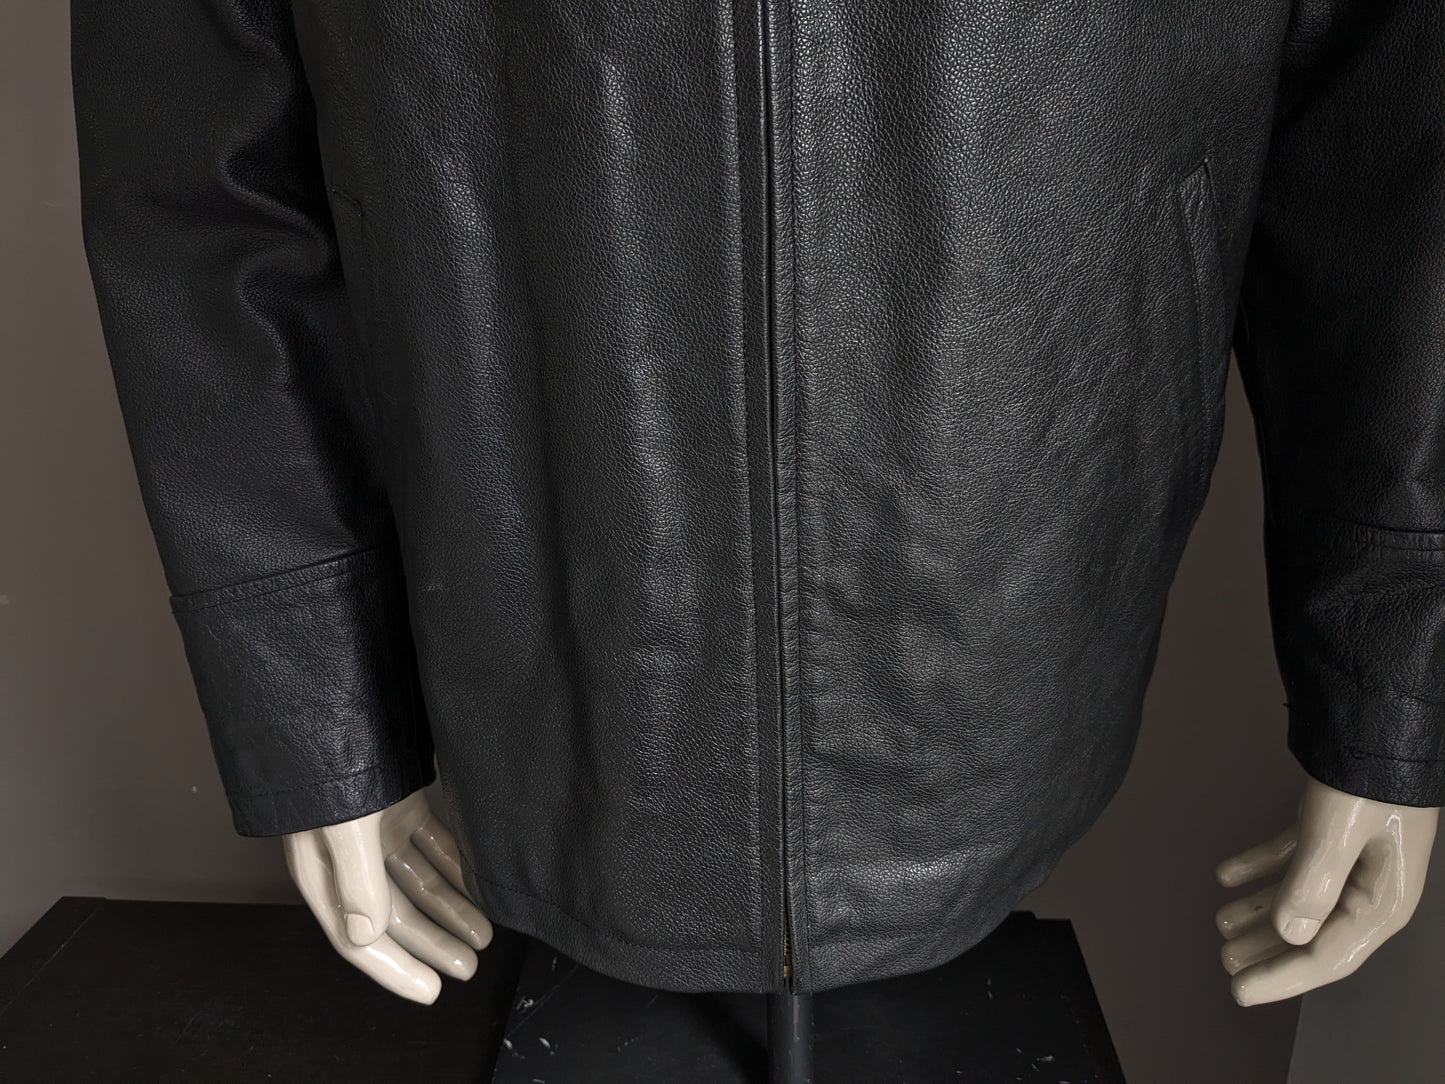 Giacca / giacca in pelle di rivoluzione. Colorato nero. Taglia L.